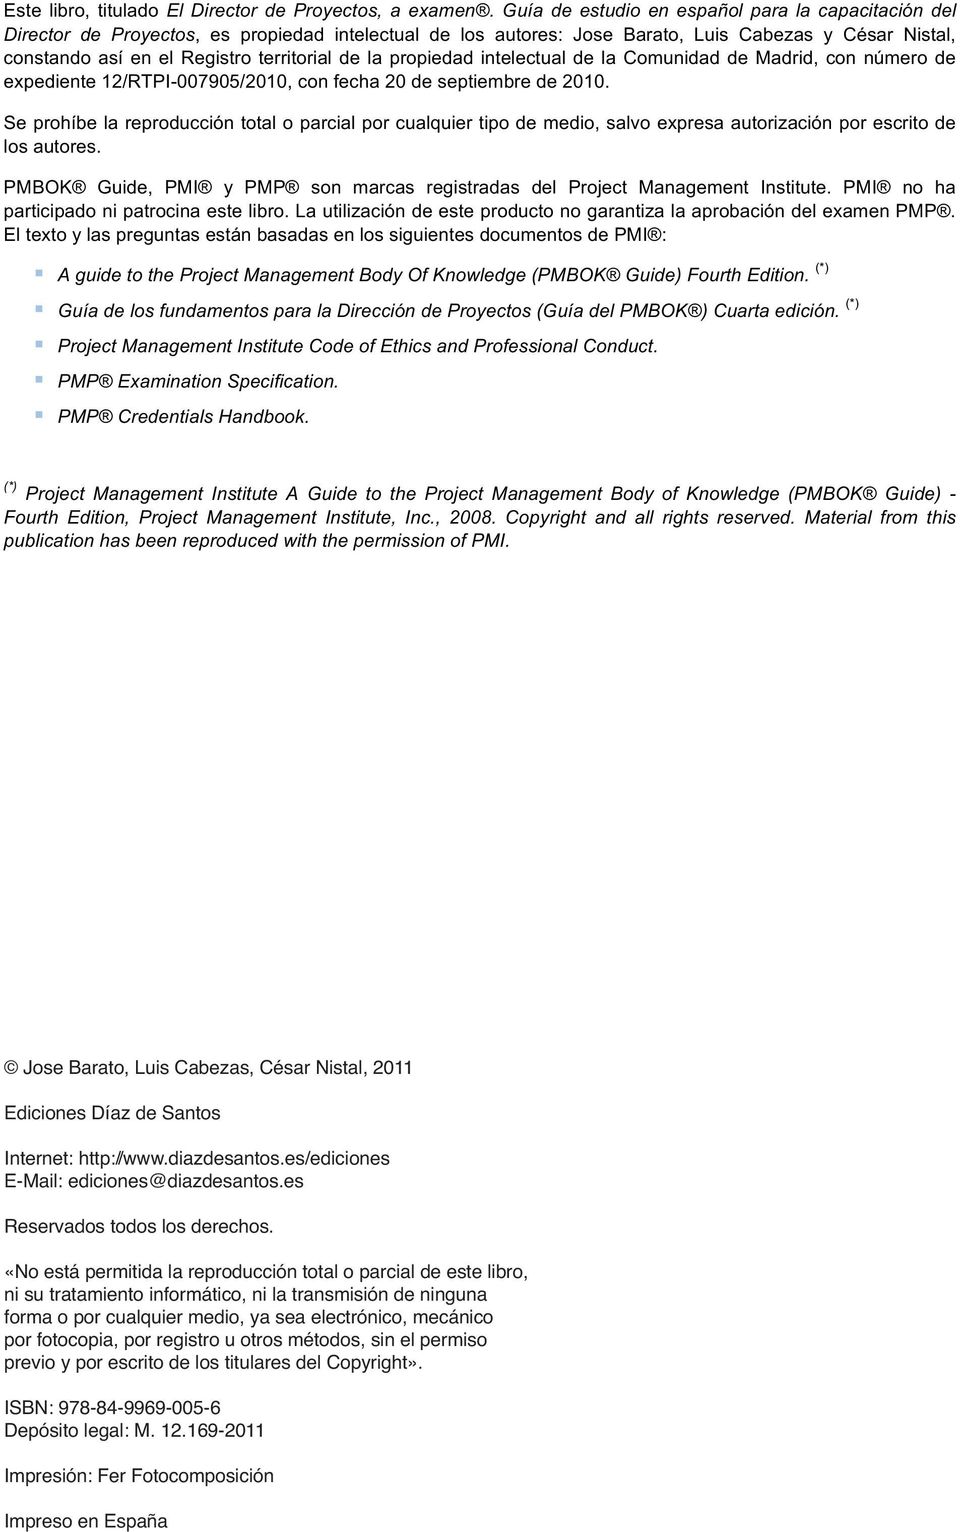 de la propiedad intelectual de la Comunidad de Madrid, con número de expediente 12/RTPI-007905/2010, con fecha 20 de septiembre de 2010.